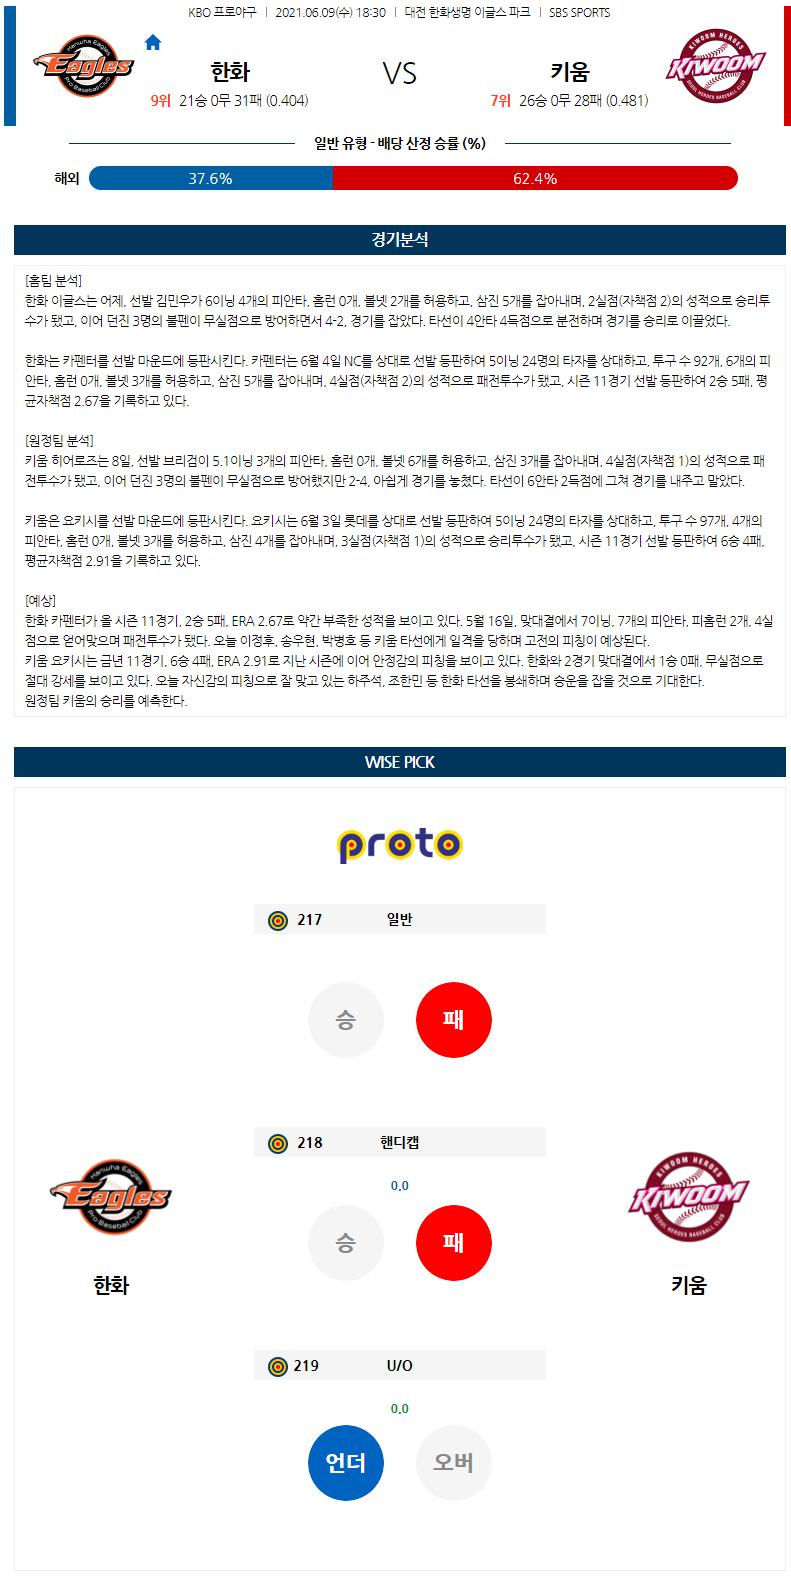 【KBO】 6월 9일 한화 vs 키움 한국야구분석 한국야구중계 무료야구중계.png